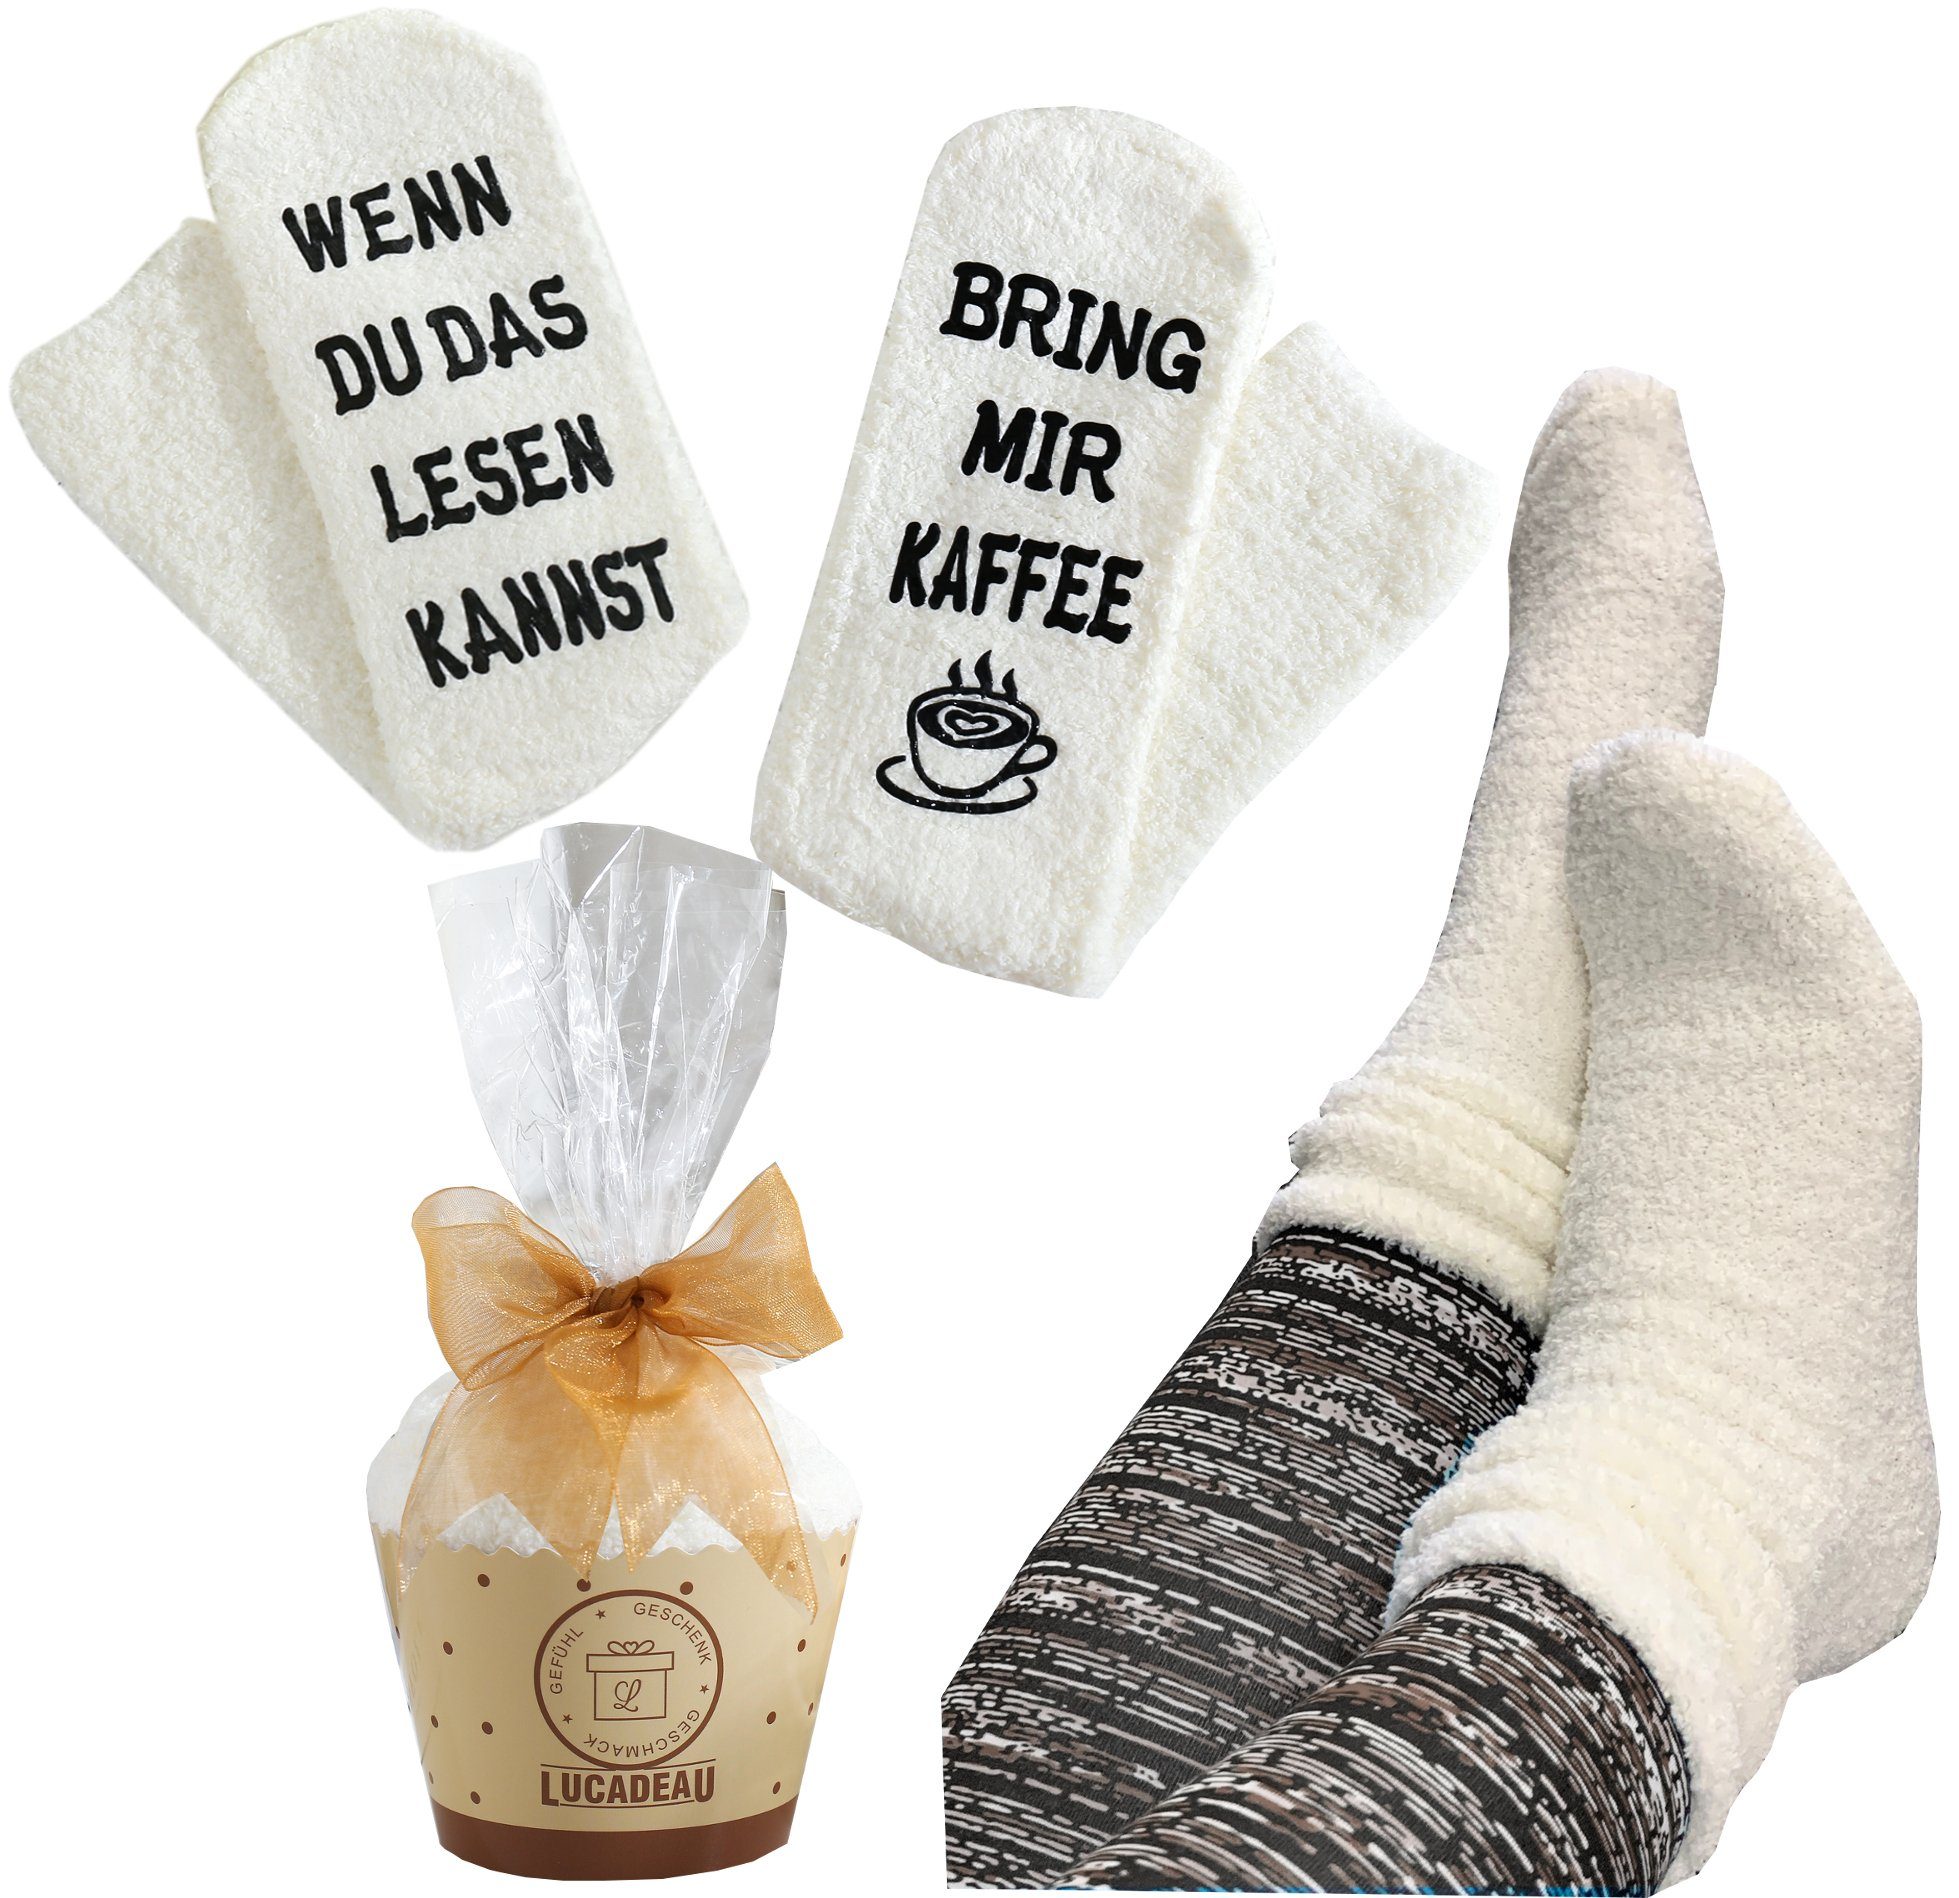 Lucadeau Kuschelsocken mit Spruch "Wenn Kaffee" lesen bring das Weihnachtsgeschenke 1 Paar) du kannst, mir Verpackung, rutschfest, creme (Cupcake 36-43, Gr